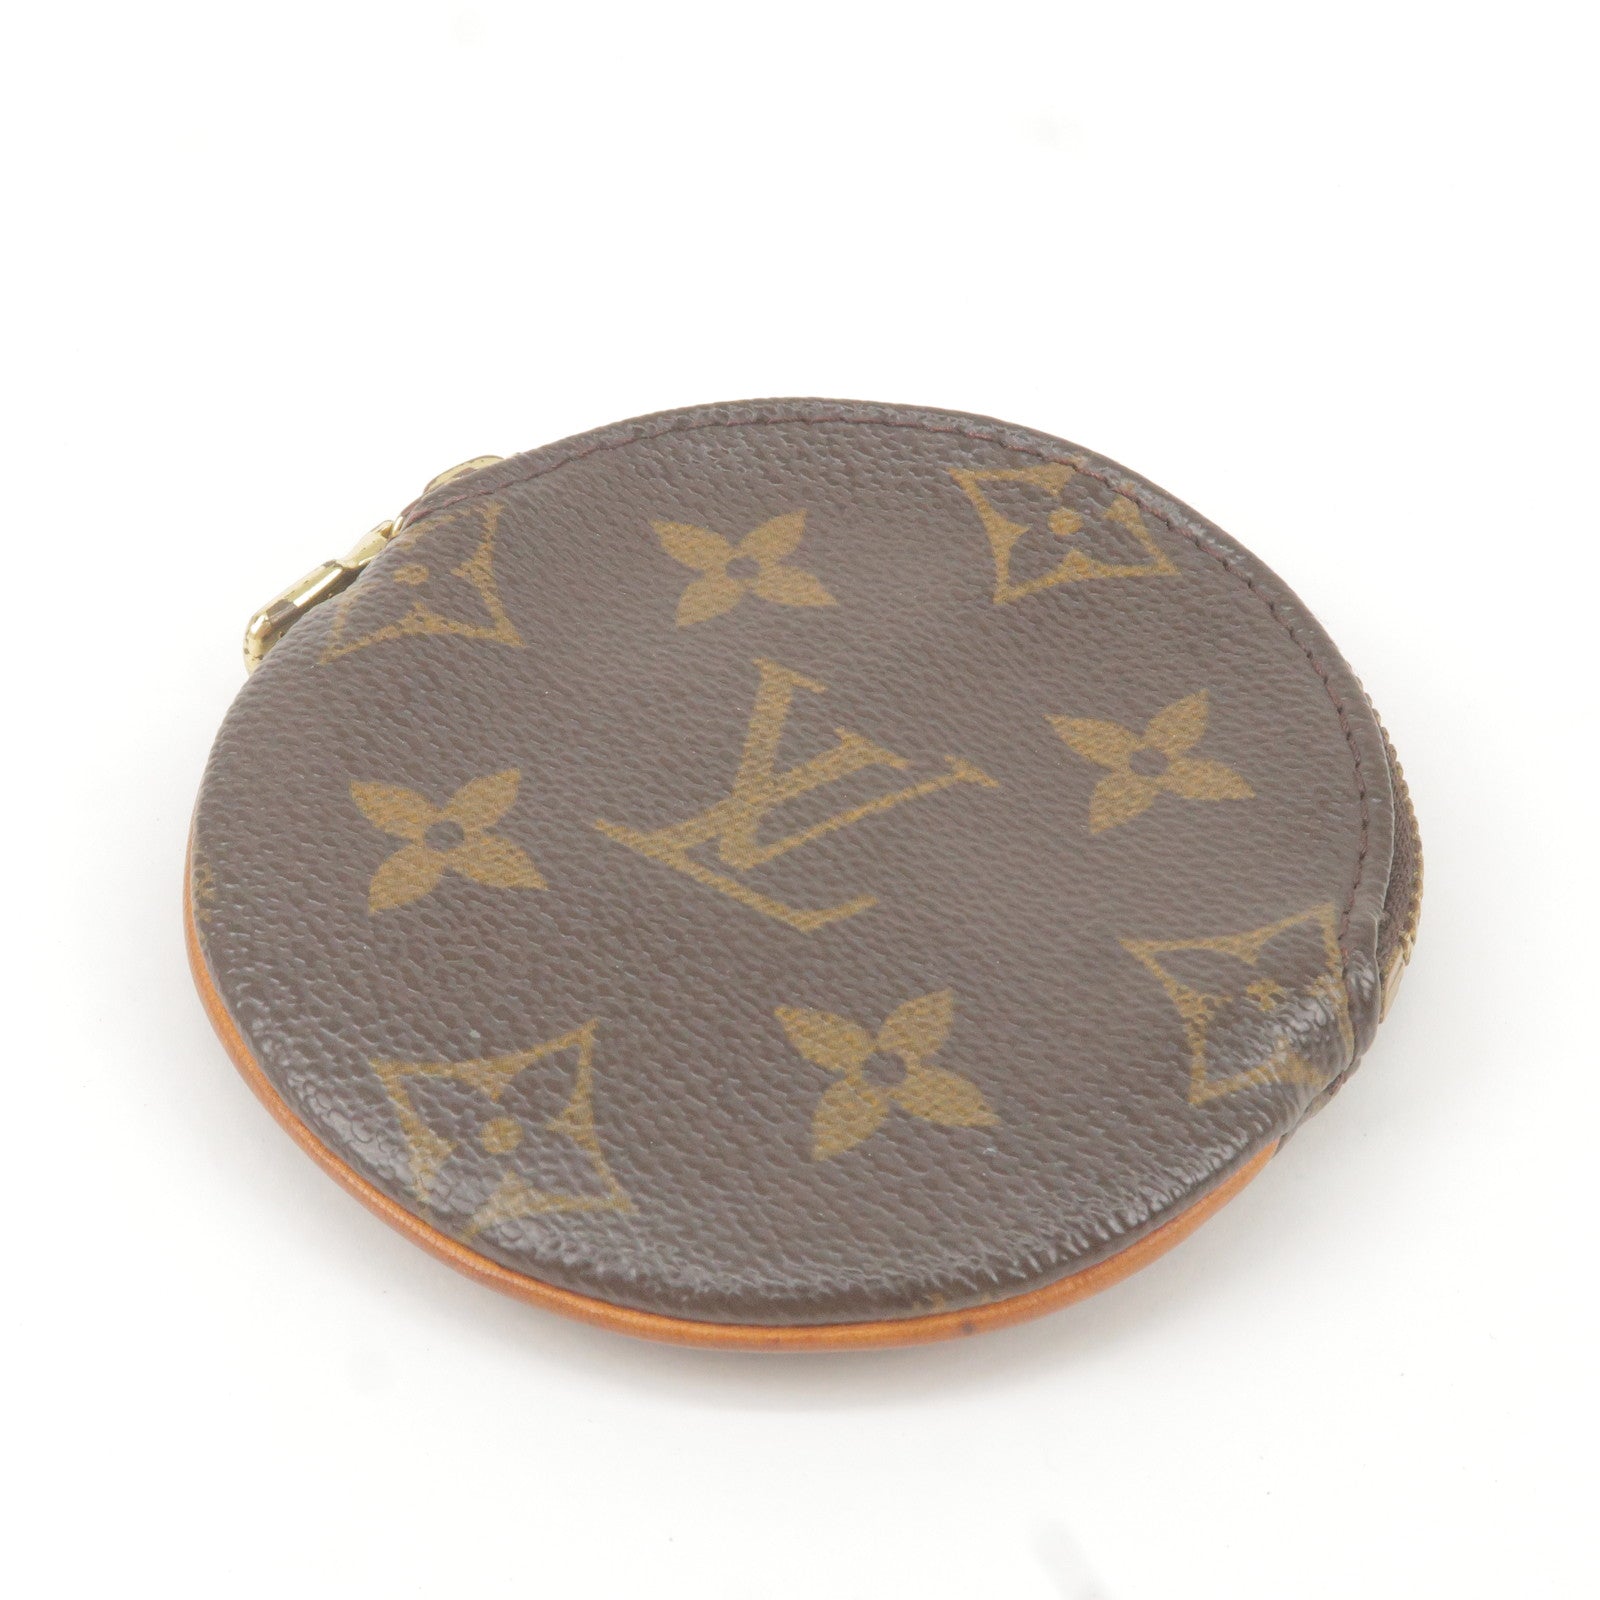 Vuitton - Monogram - Angebote für Second Hand Taschen Louis